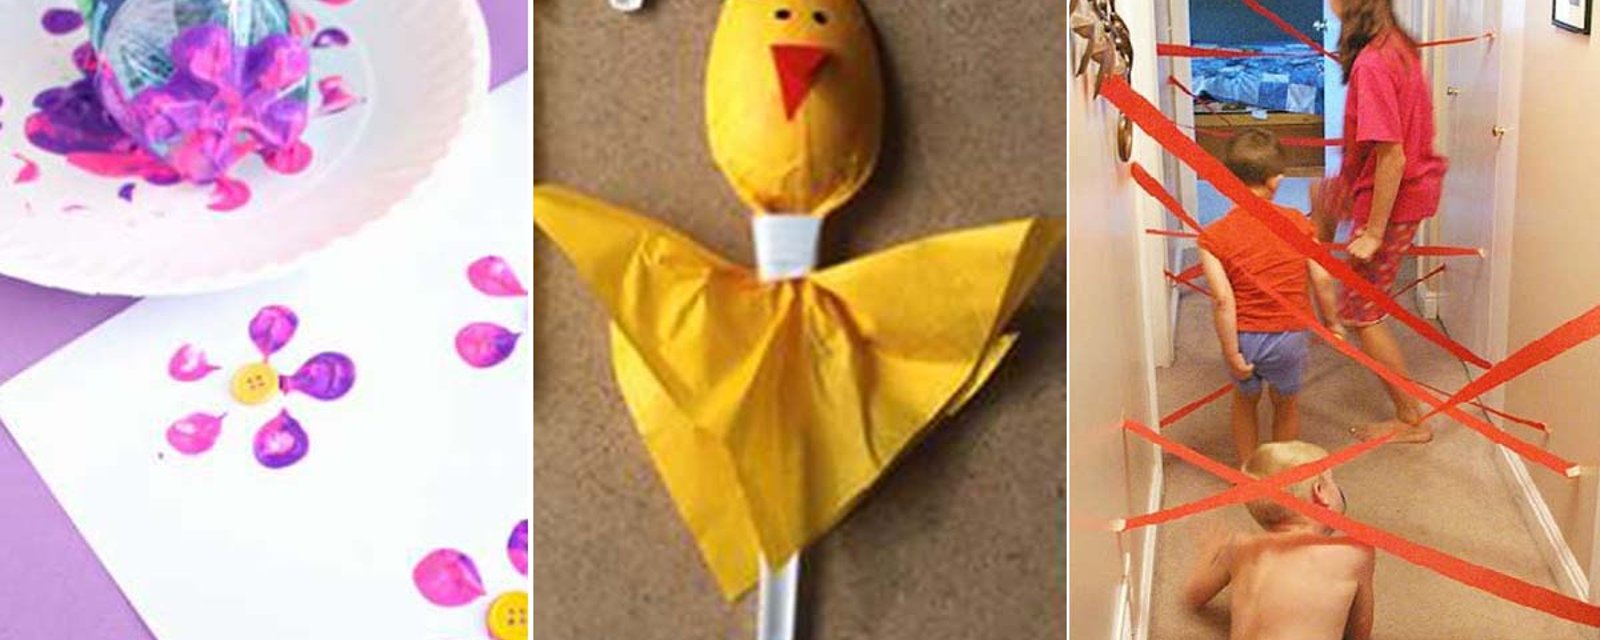 Que faire ce week-end avec les enfants? 18 idées GÉNIALES de bricolages créatifs!